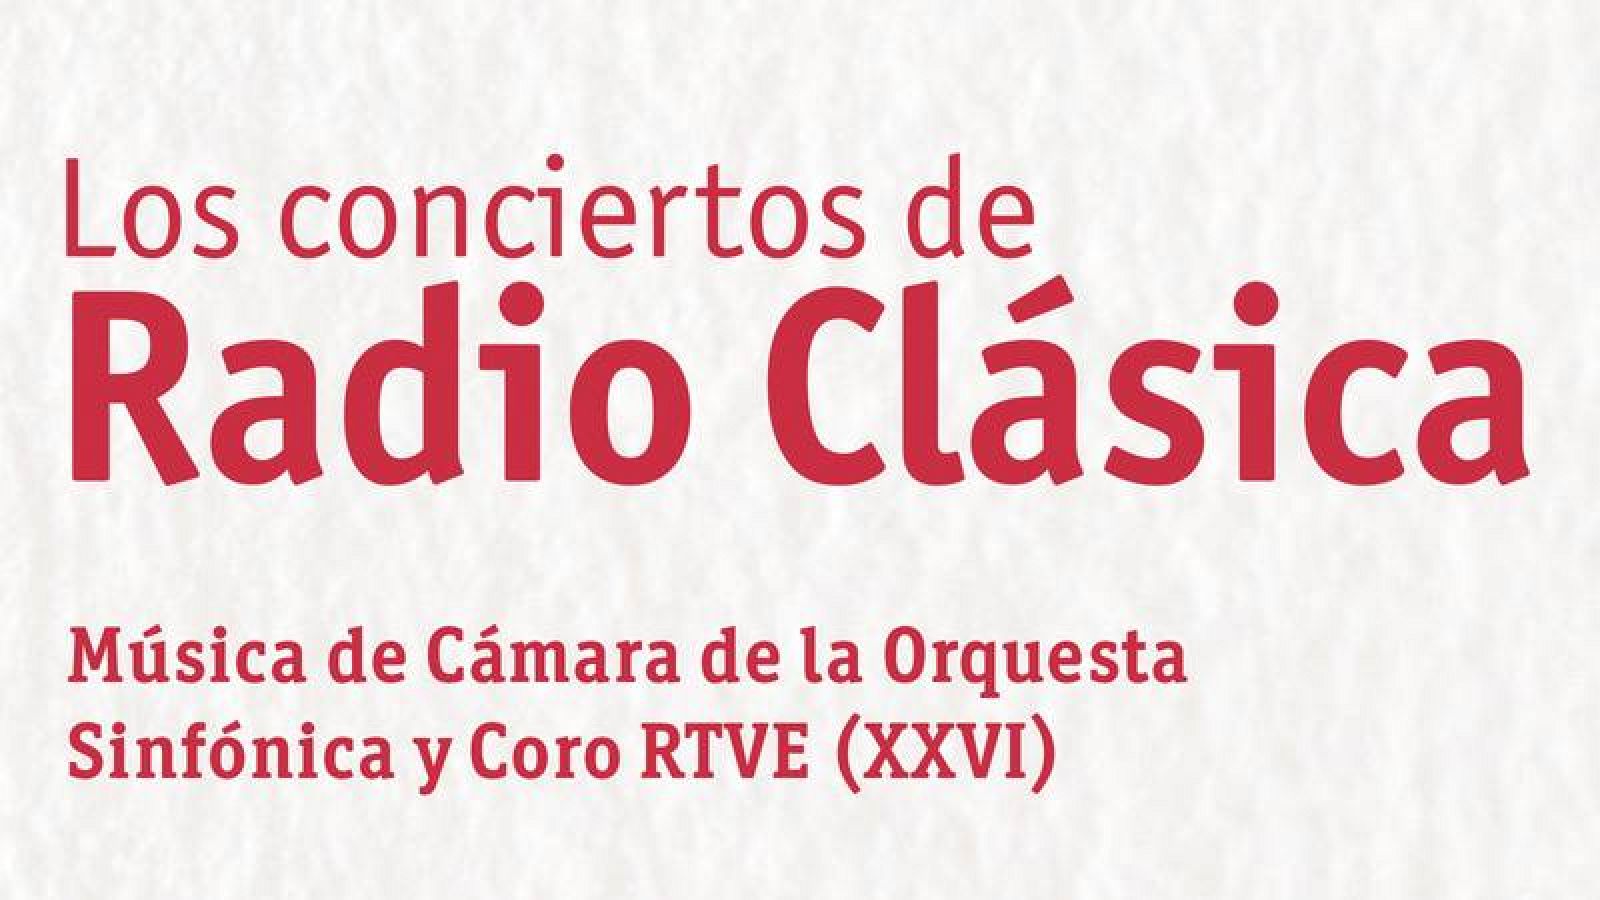 Los conciertos de Radio Clásica